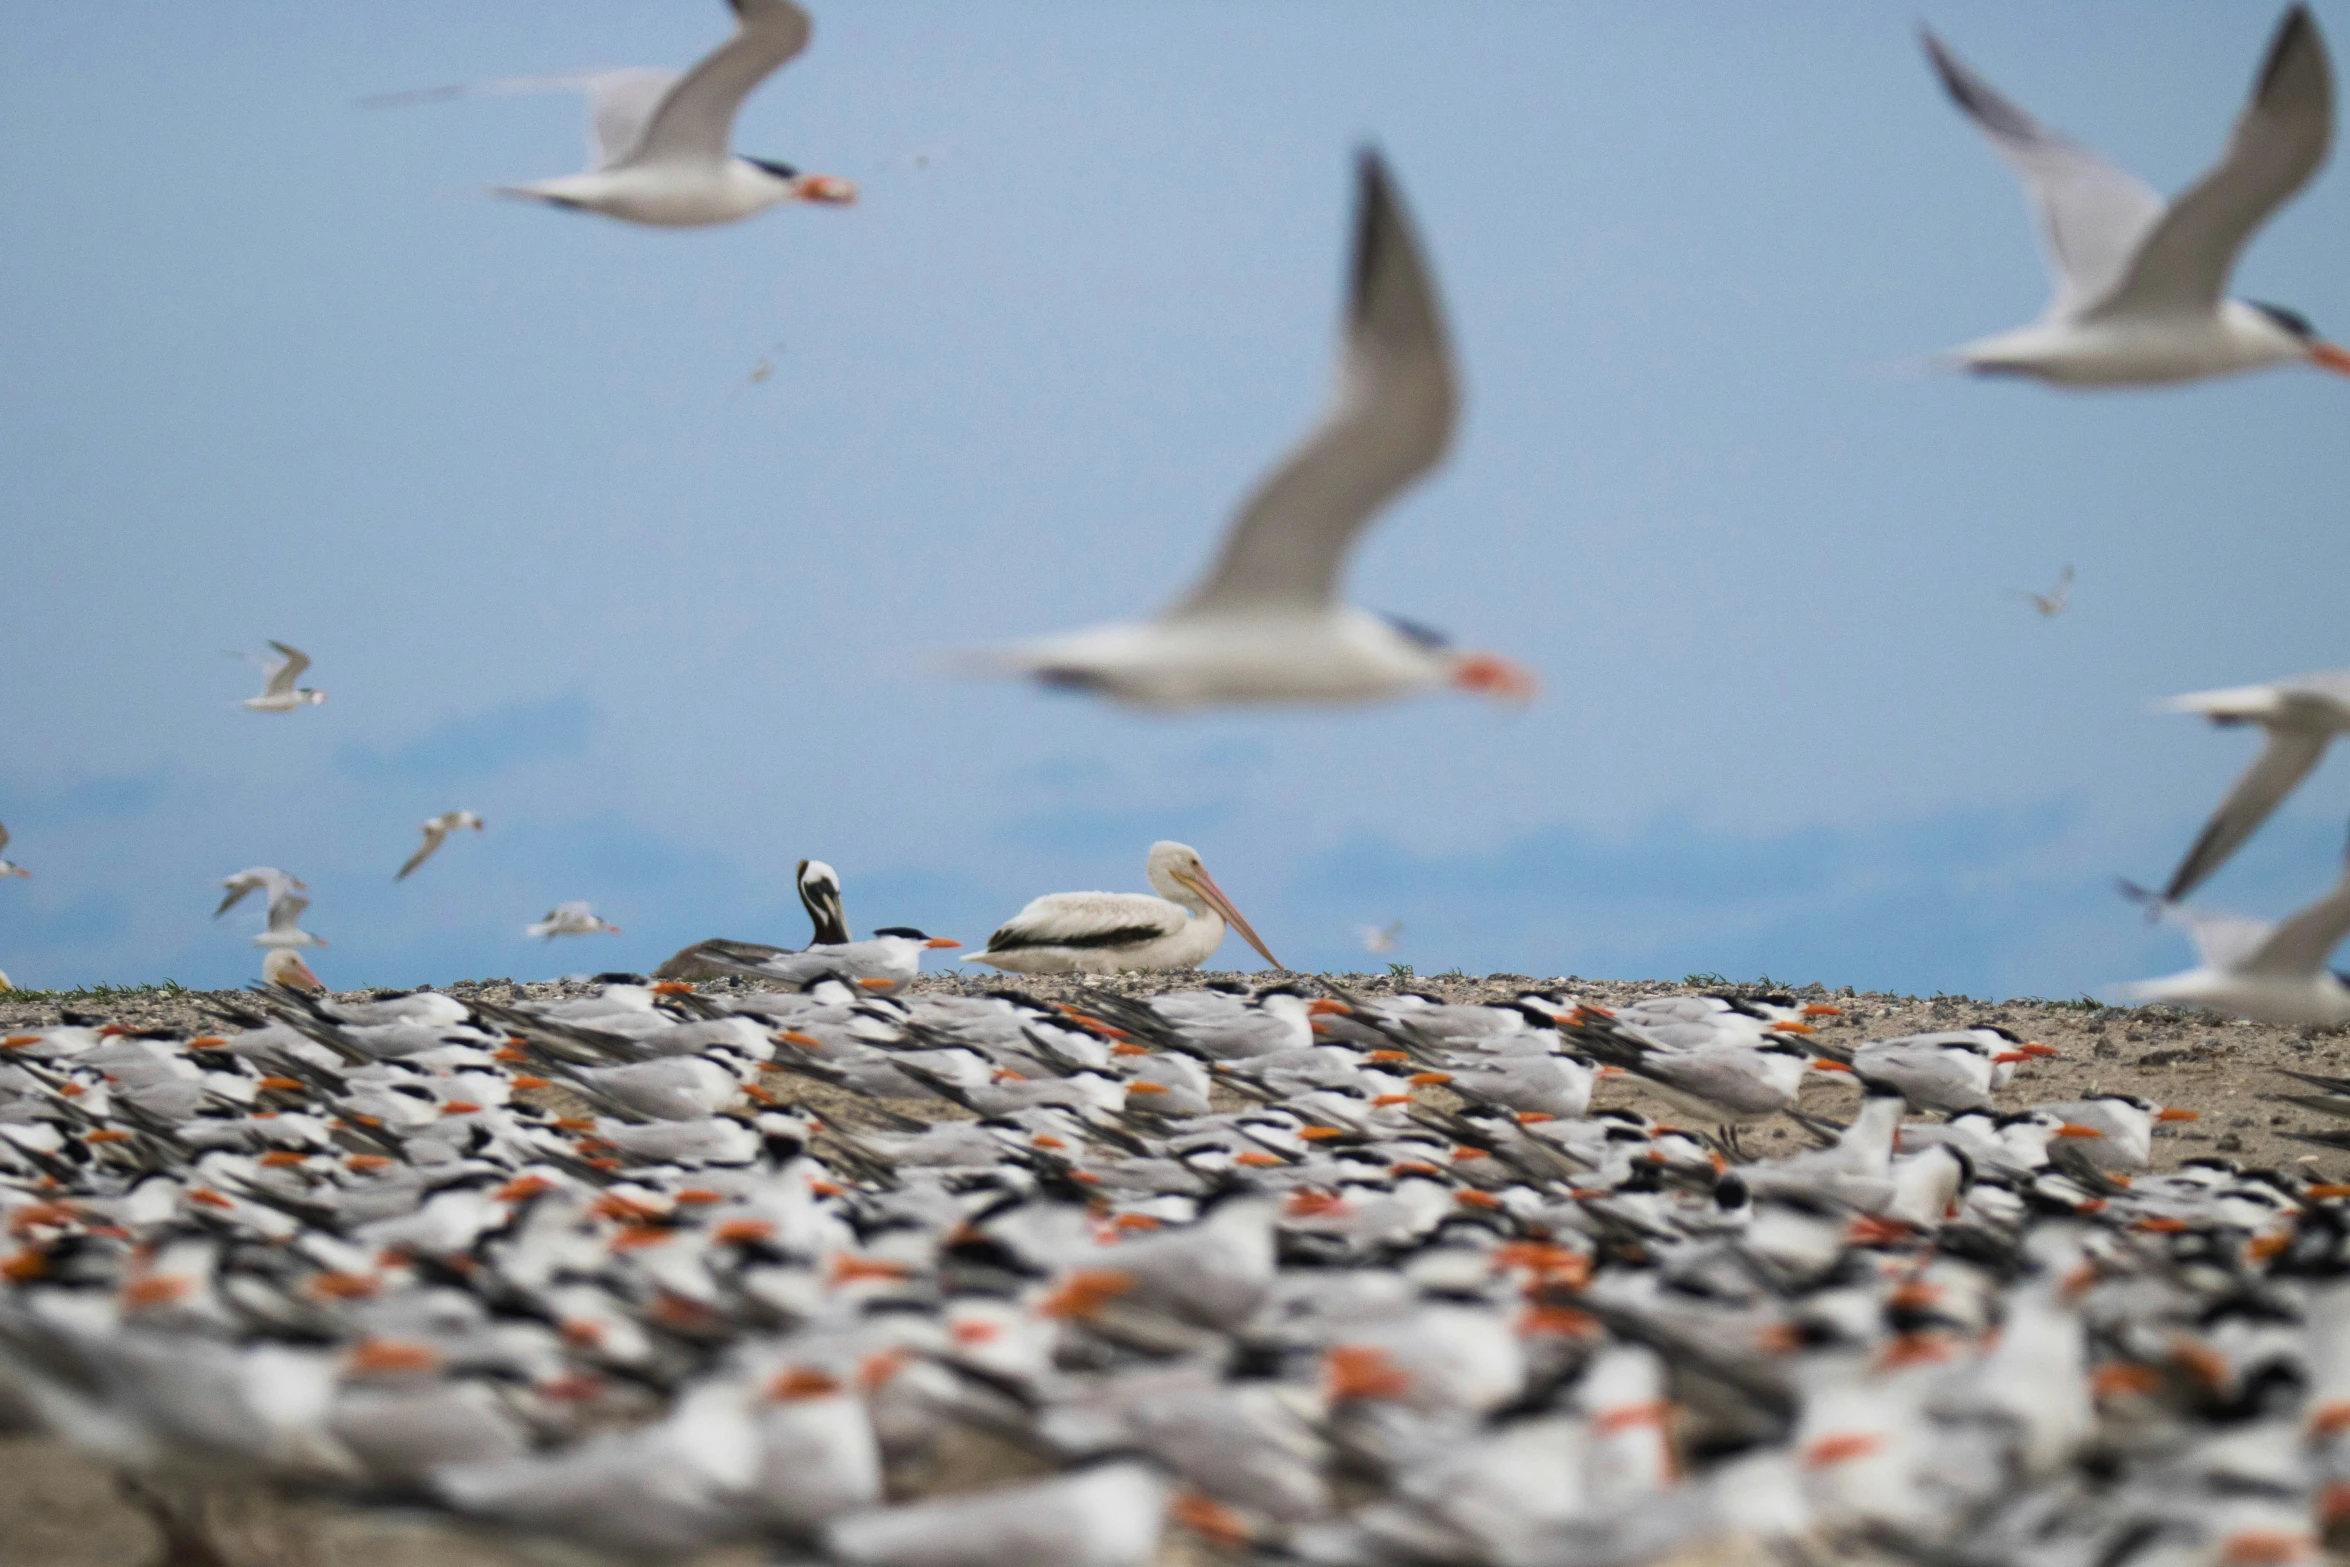 a flock of seagulls standing on a rocky beach